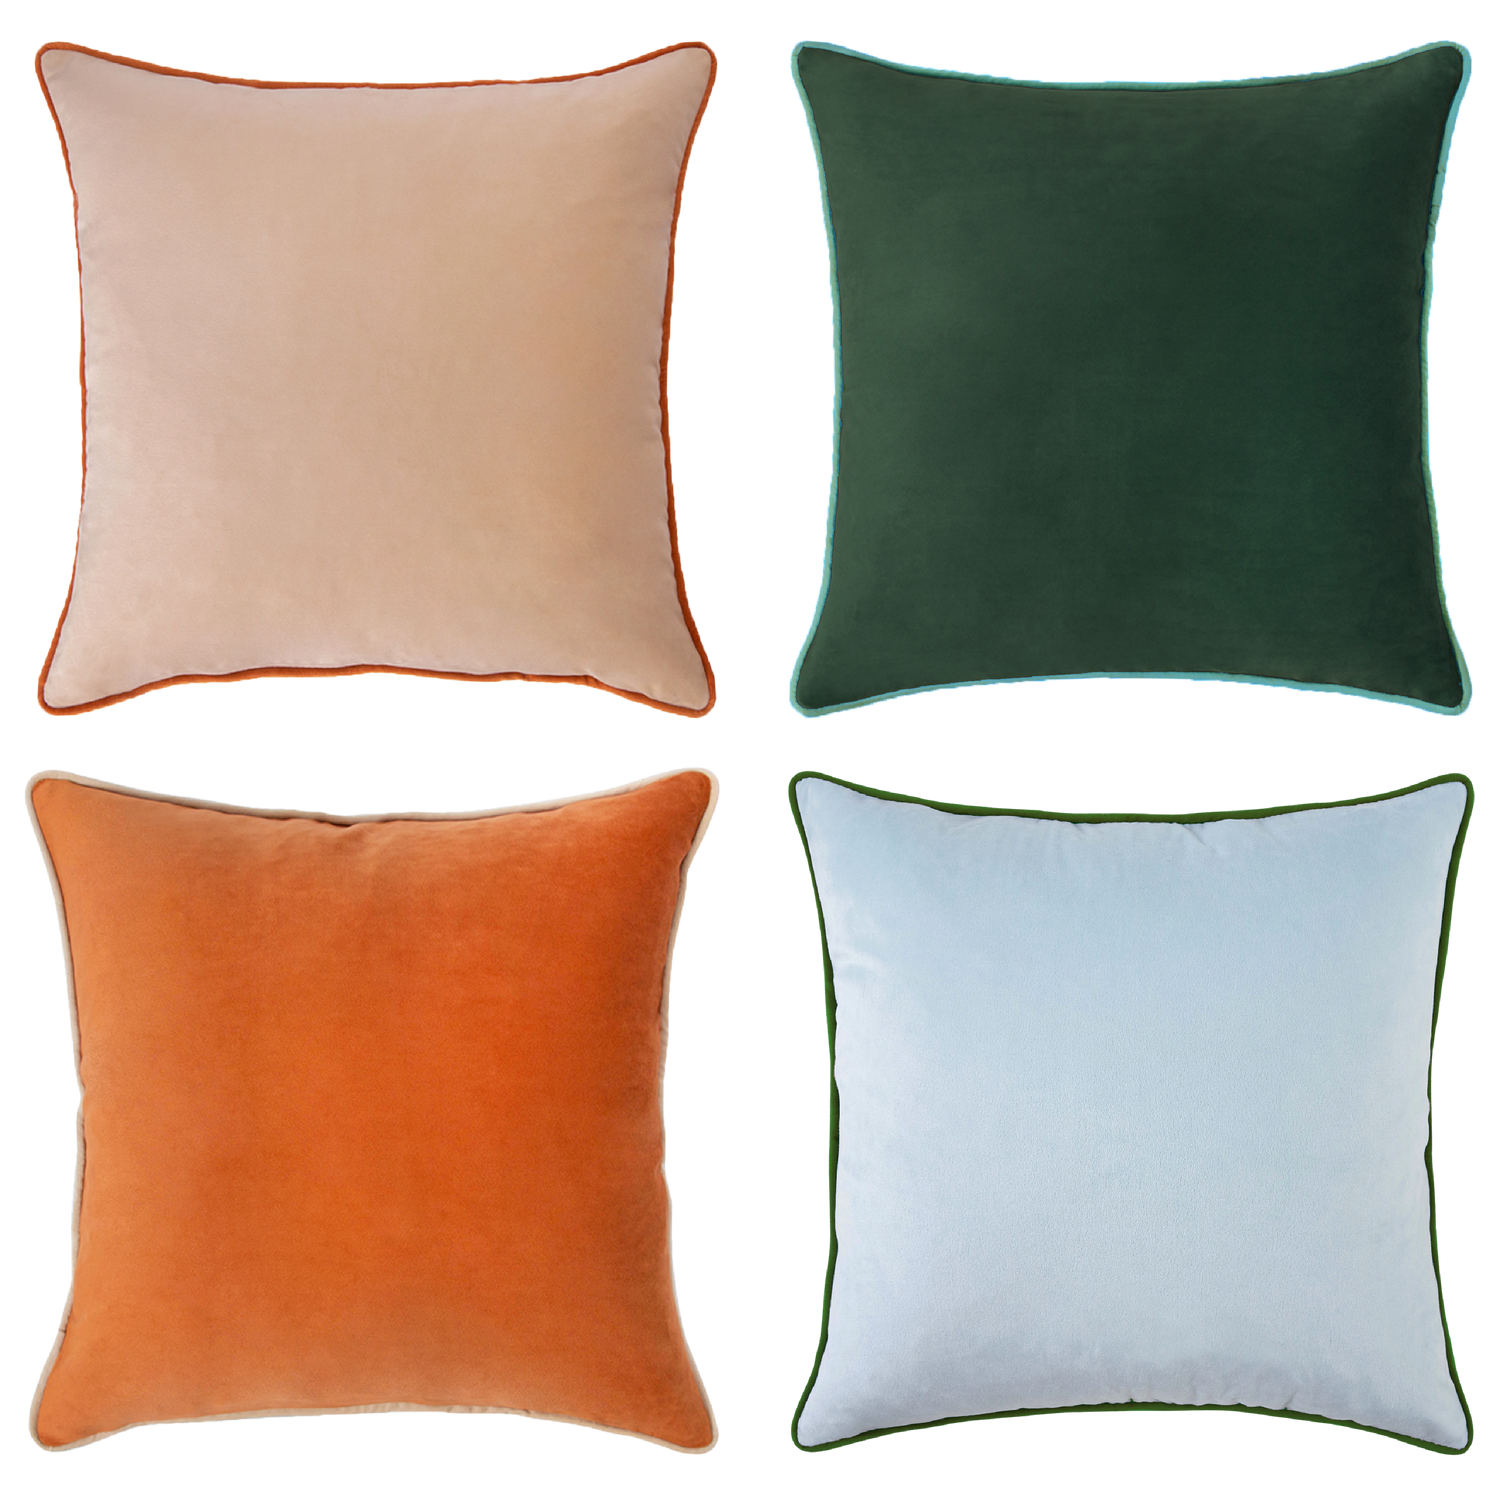 Orange/teal Pillow Cover, Decor Pillow, Throw Pillow, Decorative